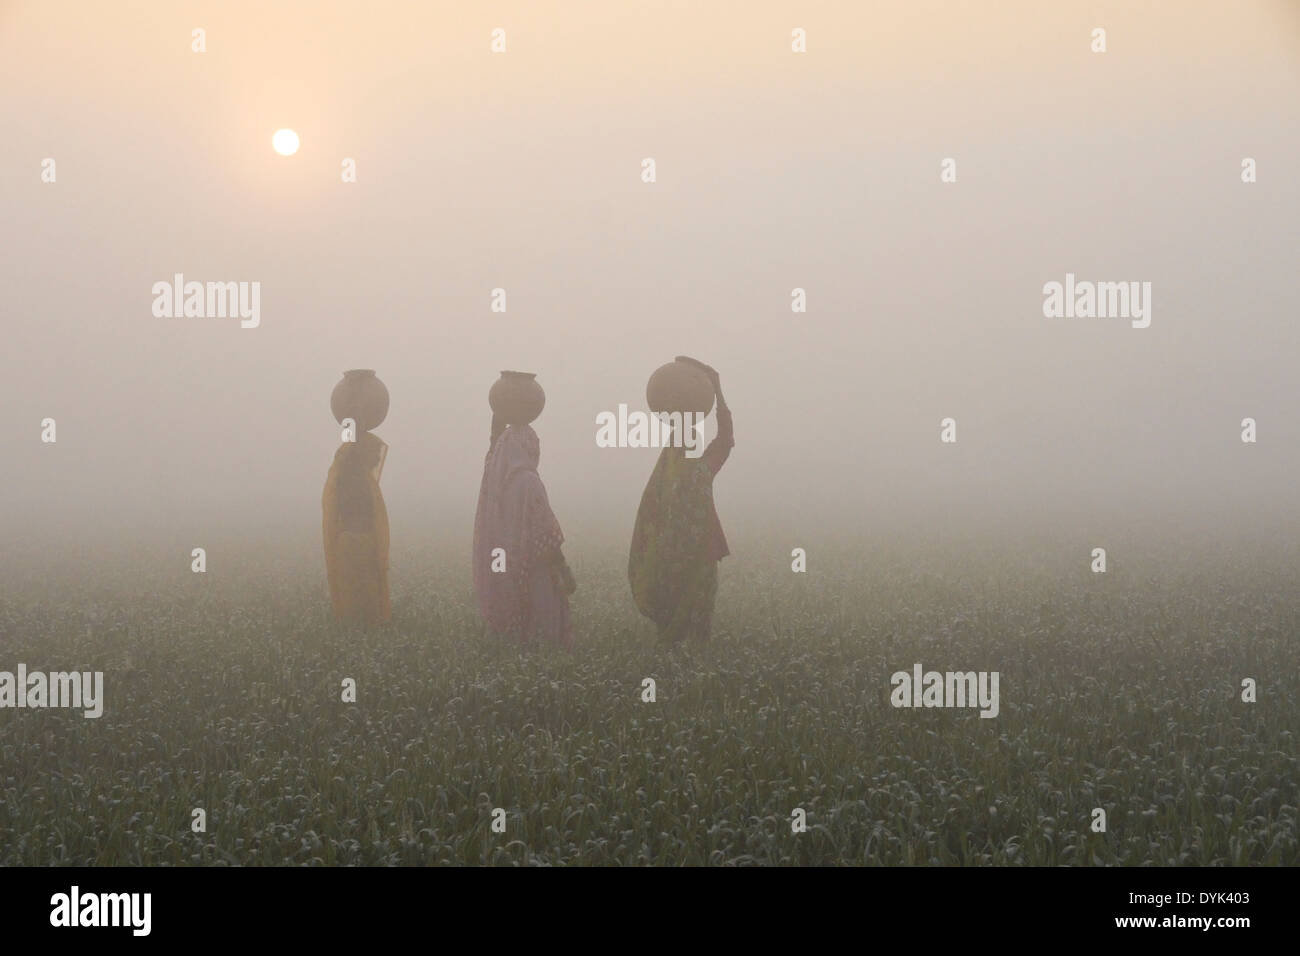 Les femmes avec de l'eau à sur la tête, marche à travers les rizières au lever du soleil sur un matin brumeux, Inde Banque D'Images